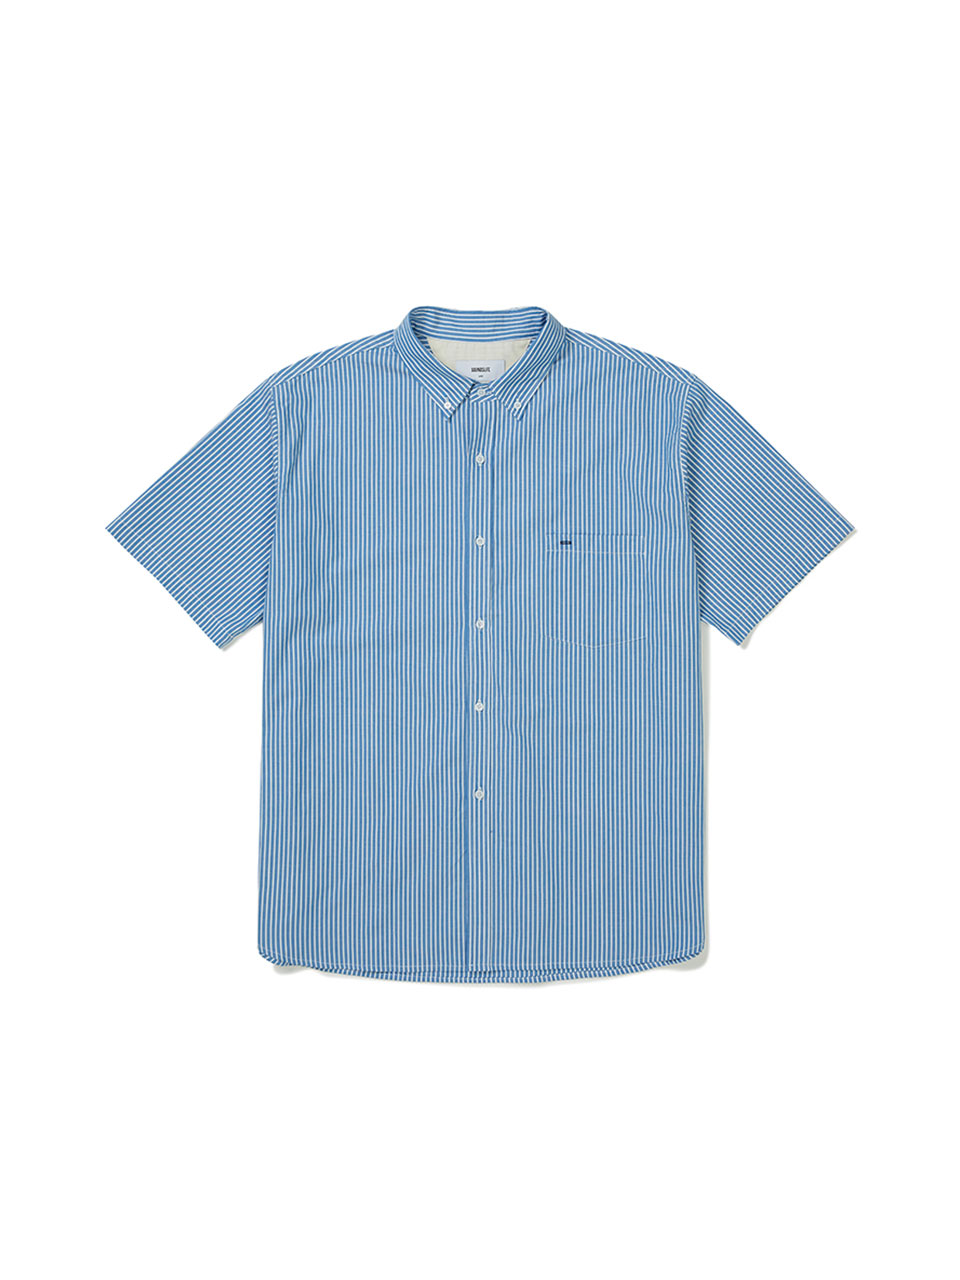 SOUNDSLIFE - Short Sleeve Shirt Big Boy Fit Blue